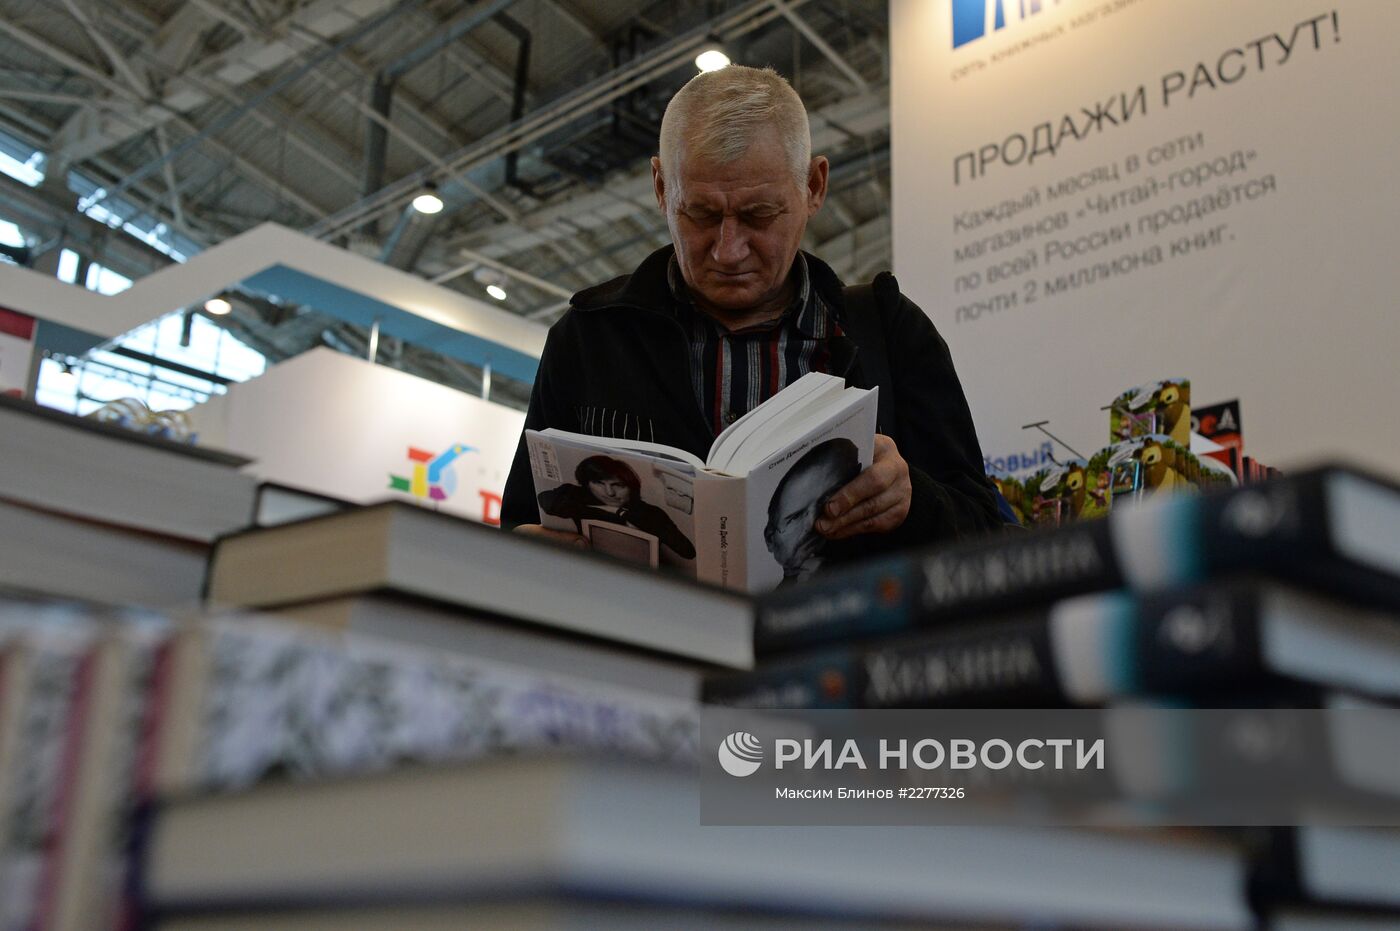 XXVI Московская международная книжная выставка-ярмарка